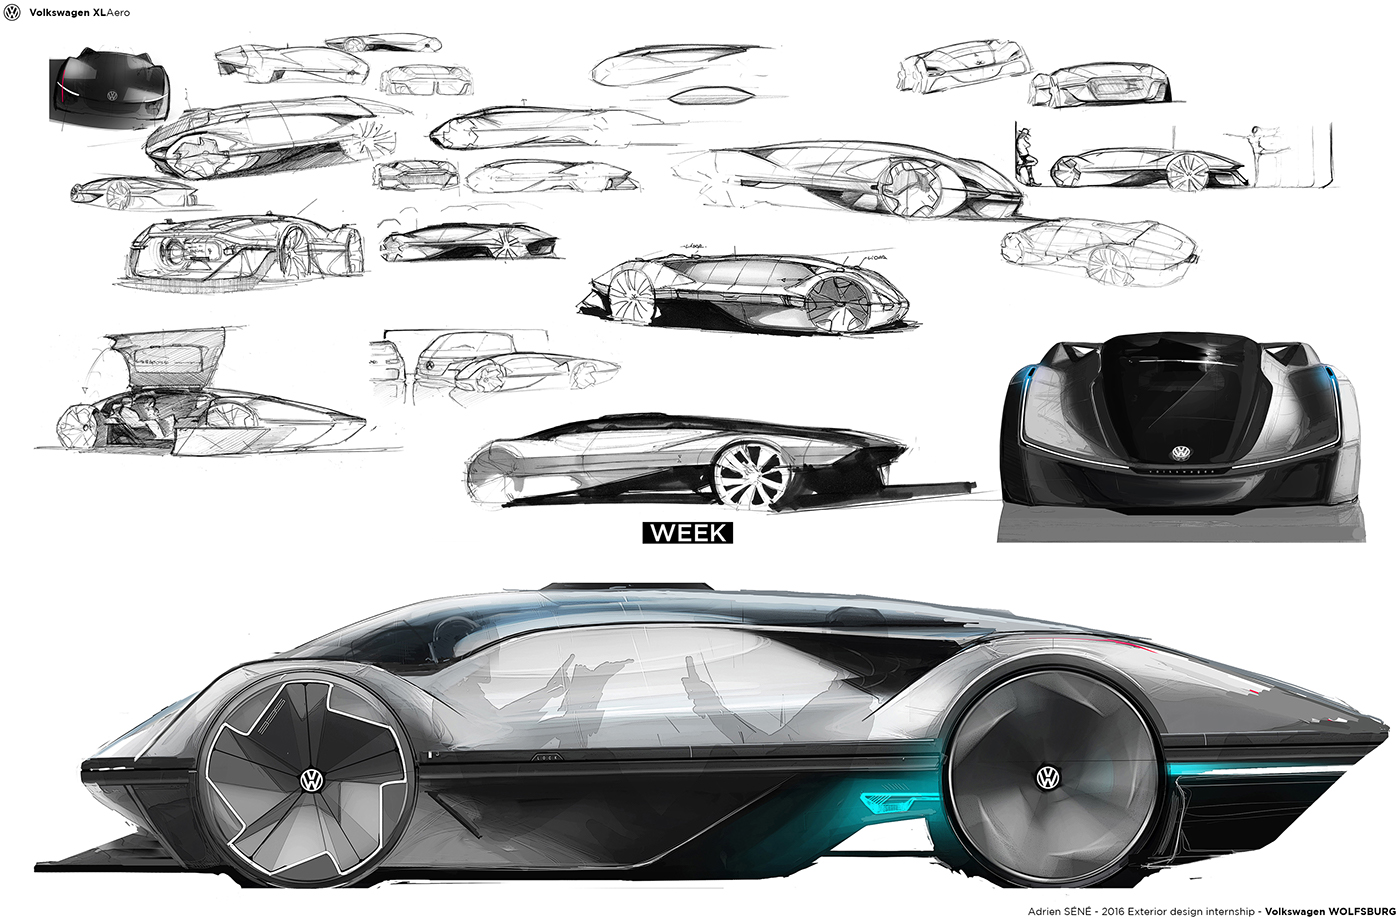 Automotive design car design car sketching Transportation Design concept design volkswagen design master degree project ISD sketch cardesign